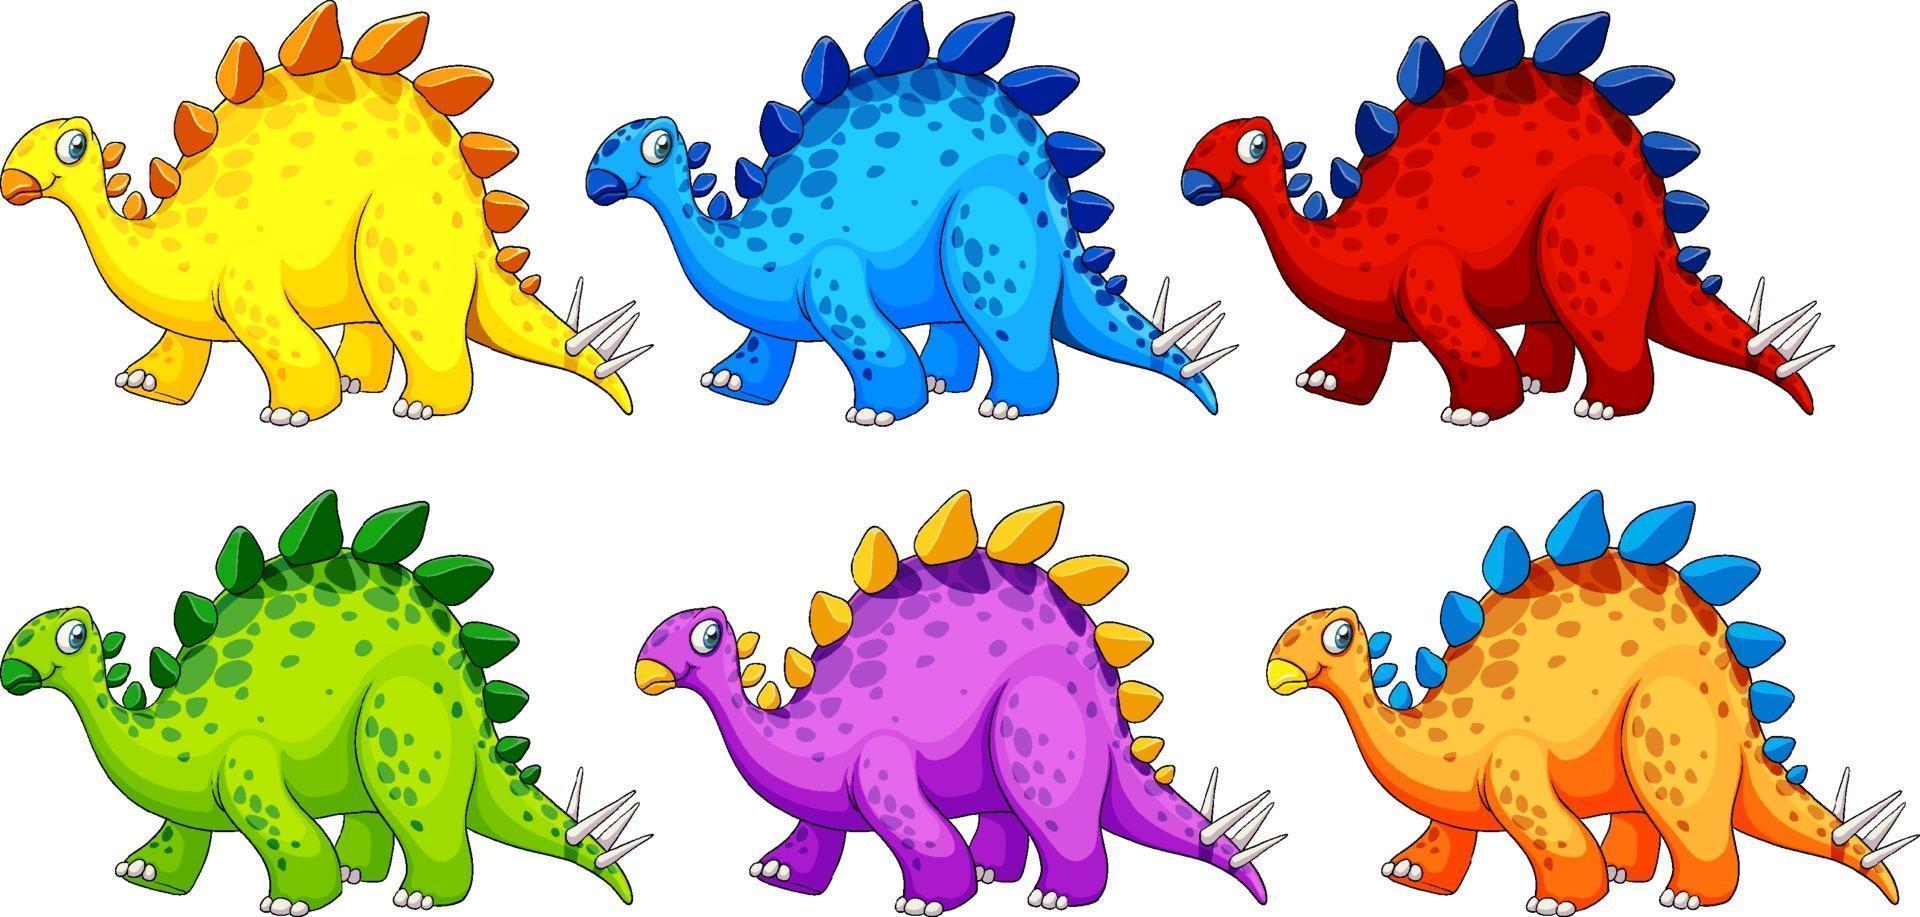 un personaggio dei cartoni animati di dinosauro stegosauro vettore